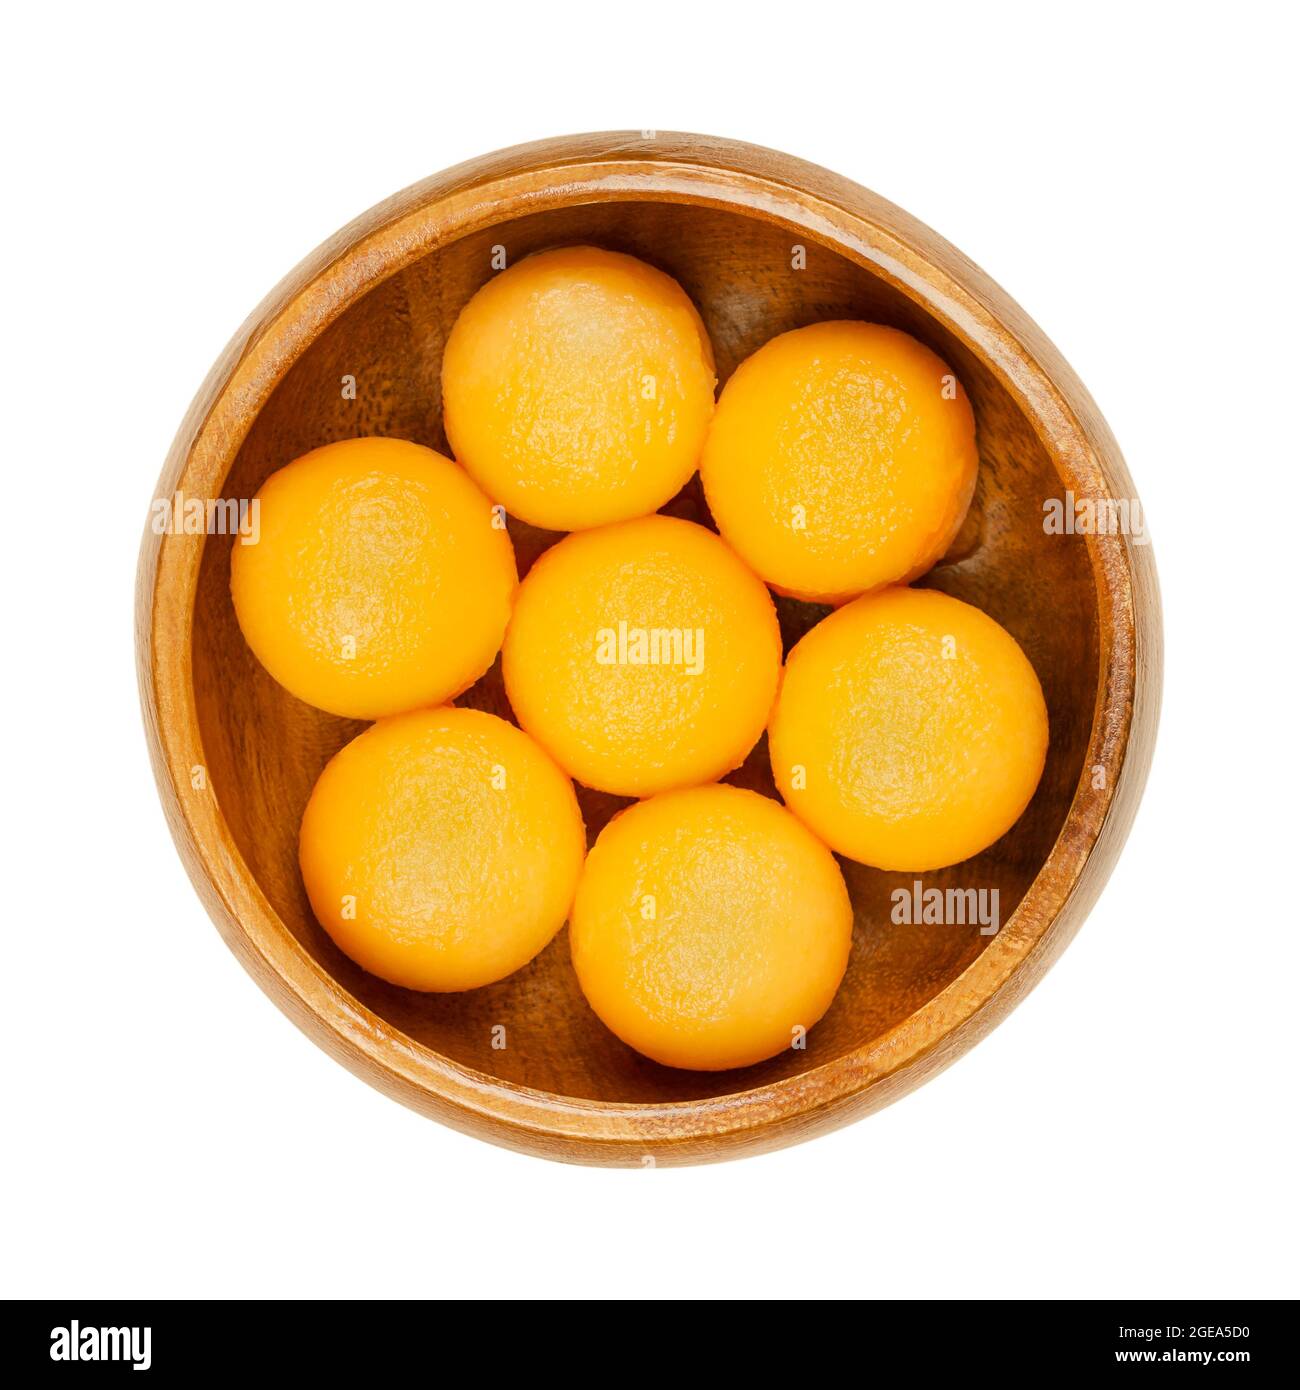 Palle di melone di Cantaloupe al miele in una ciotola di legno. Appena tagliato con un ballatore di melone, sfere dolci pronte da mangiare di un frutto maturo di un melone ibrido. Foto Stock